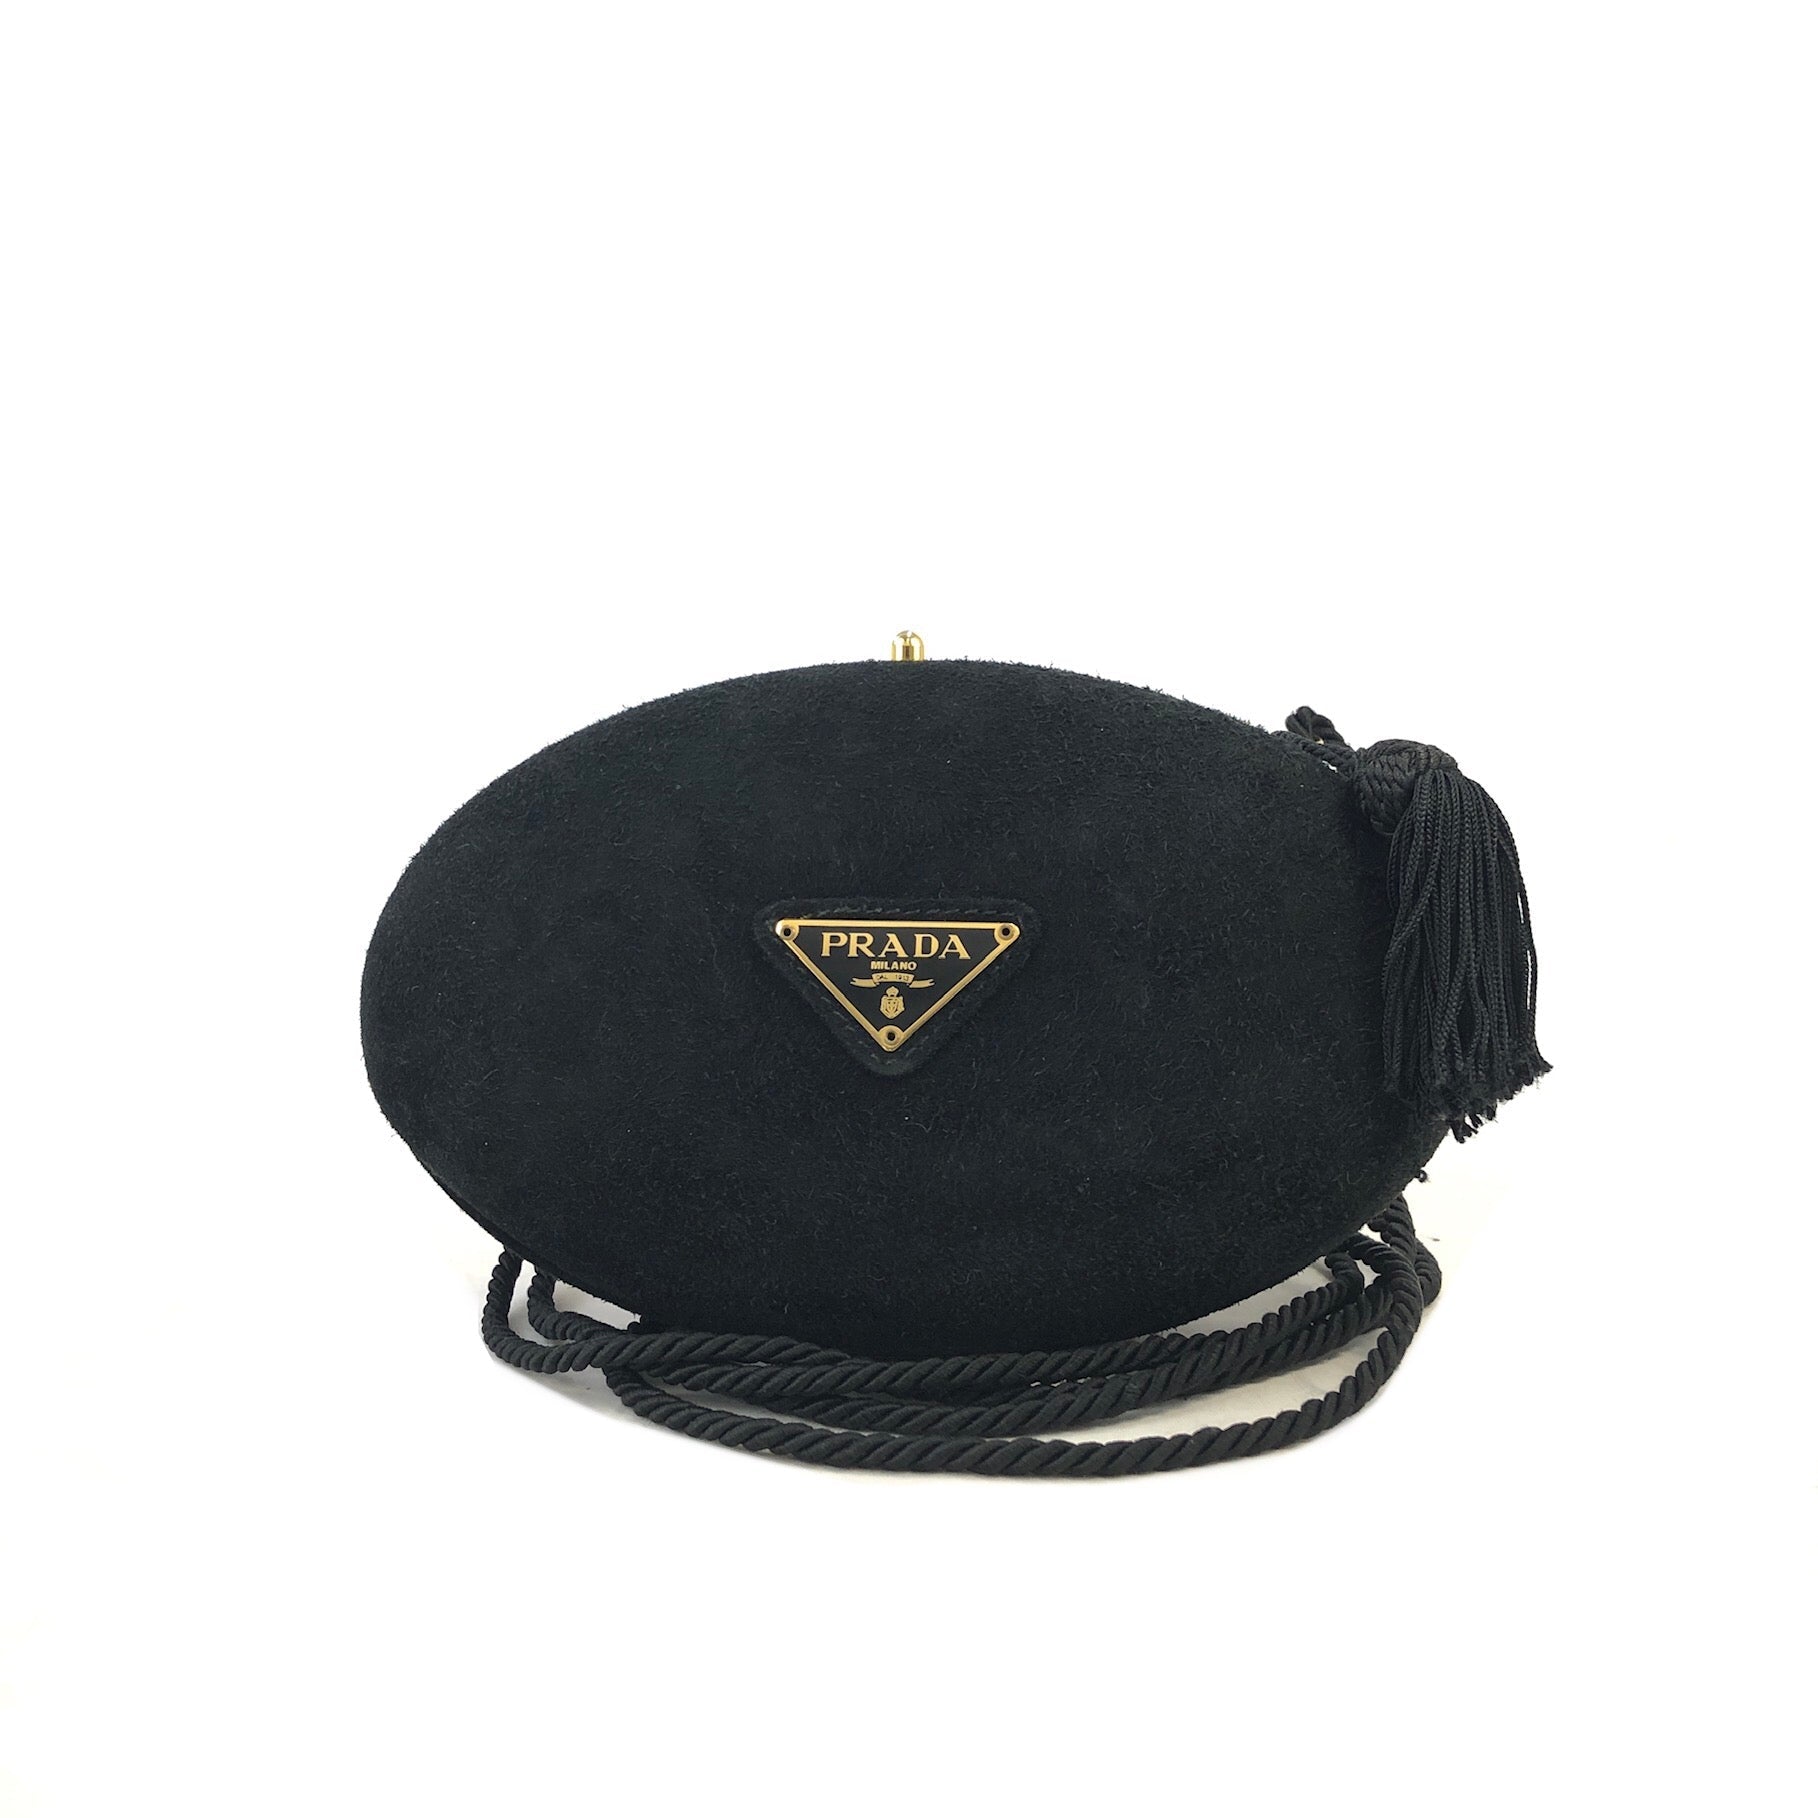 Prada Odette Saffiano Leather Bag In Nero